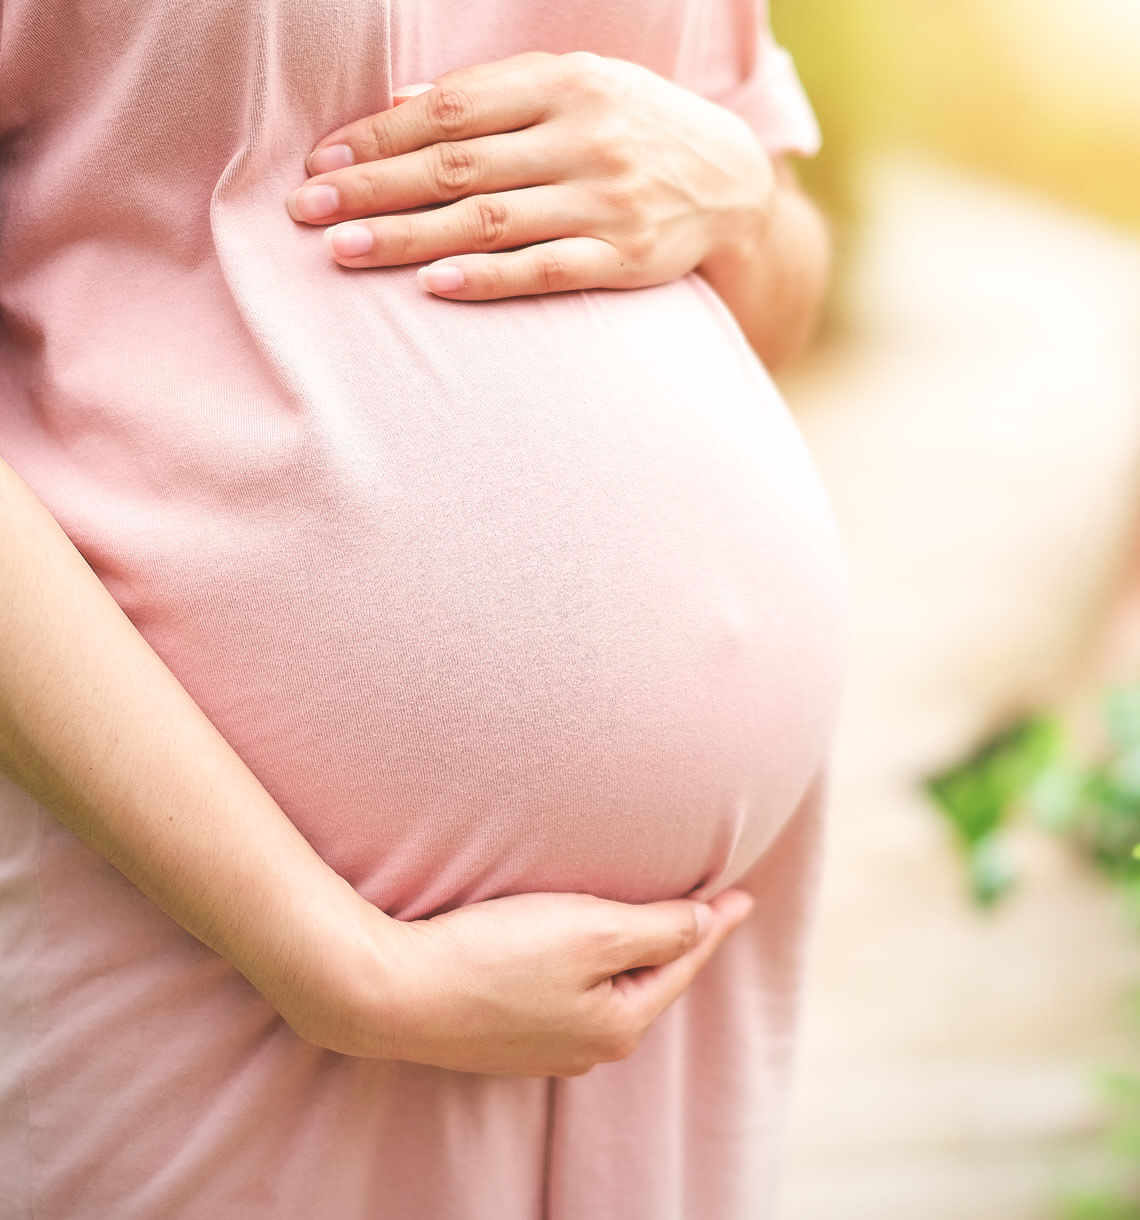 Eisenmangel bei schwangeren Frauen